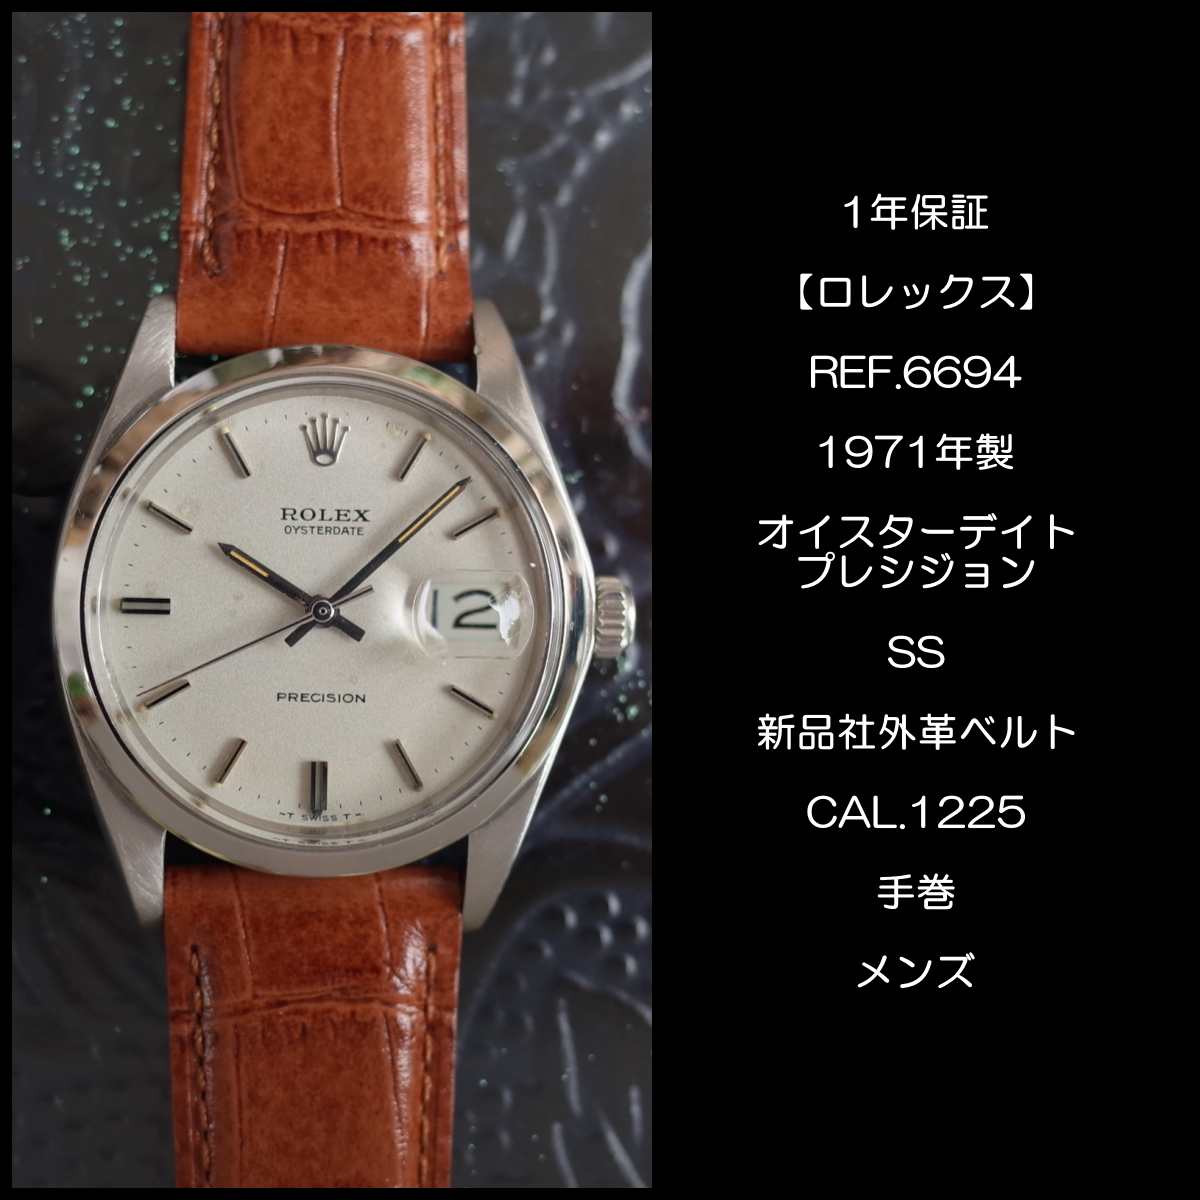 ロレックス 6694 1971年 オイスターデイト プレシジョン マットグレー SS cal.1225 革ベルト ROLEX 手巻 メンズ 腕時計  【中古】 | ブランドショップパリノ